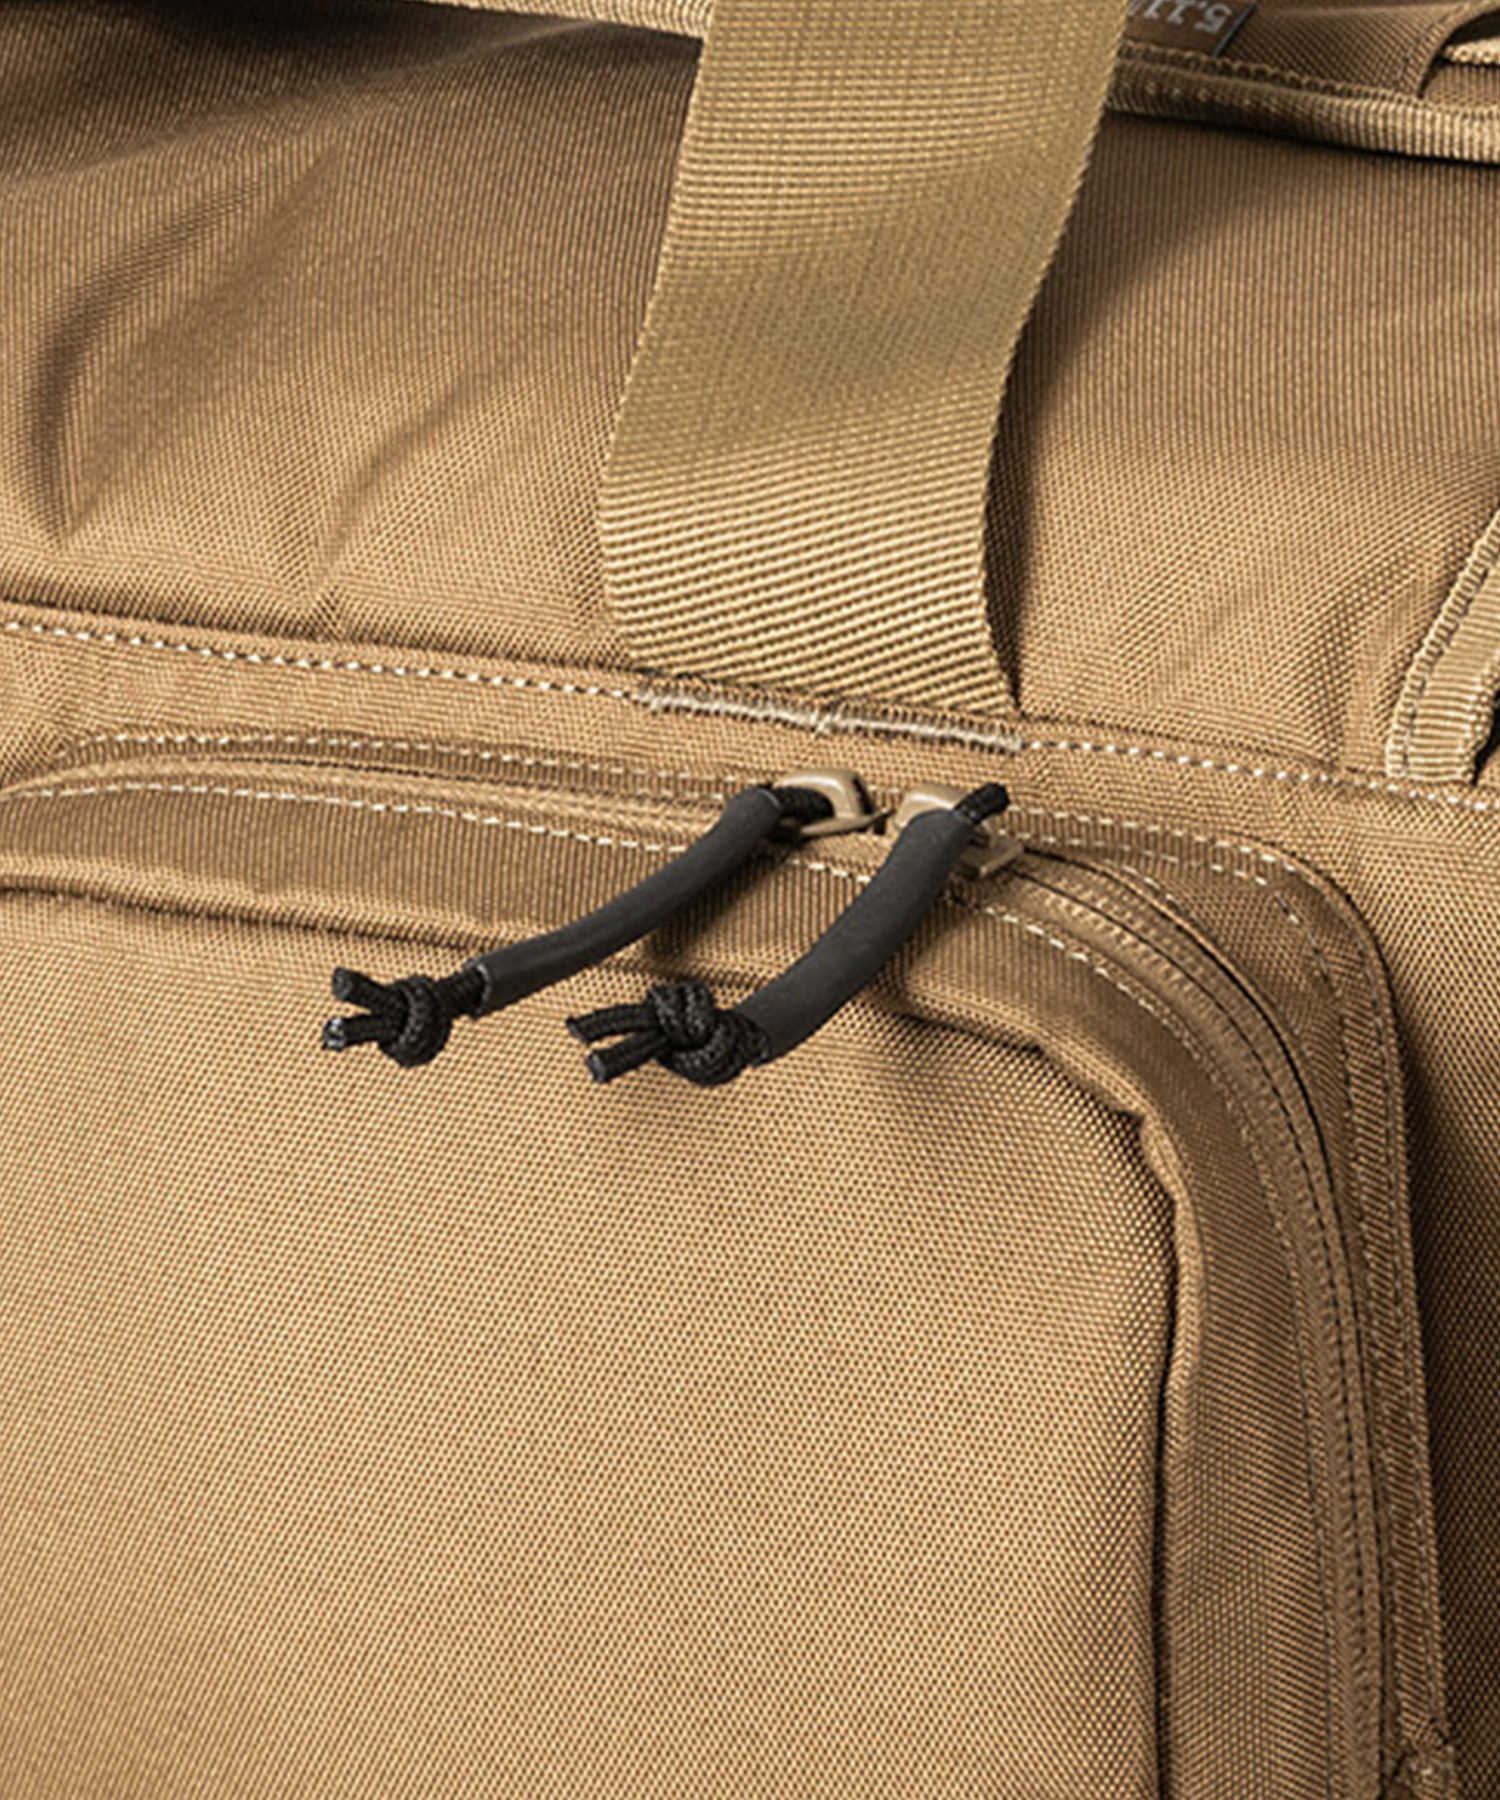 dettaglio delle zip YKK sulla borsa da poligono range ready trainer bag di 5.11 tactical